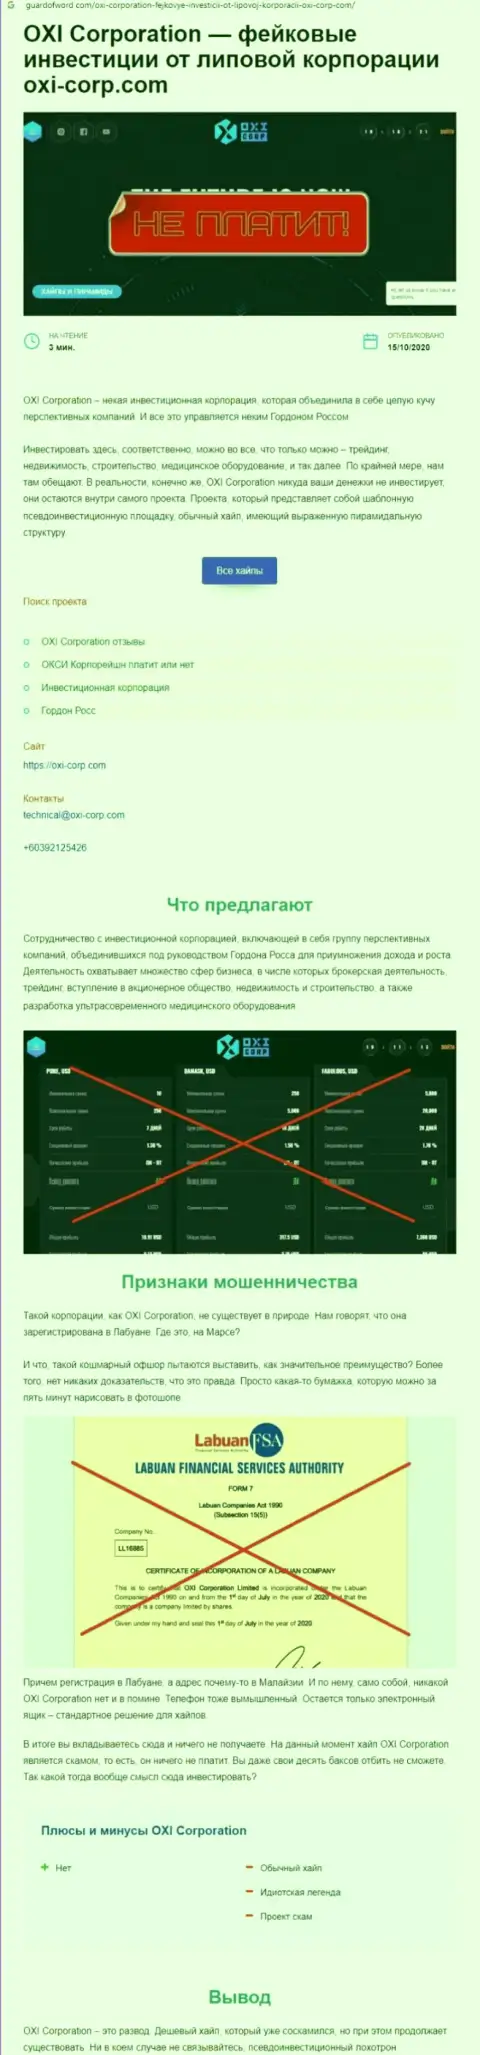 Обзор ОксиКорпорейшн, который взят на одном из сайтов-отзовиков